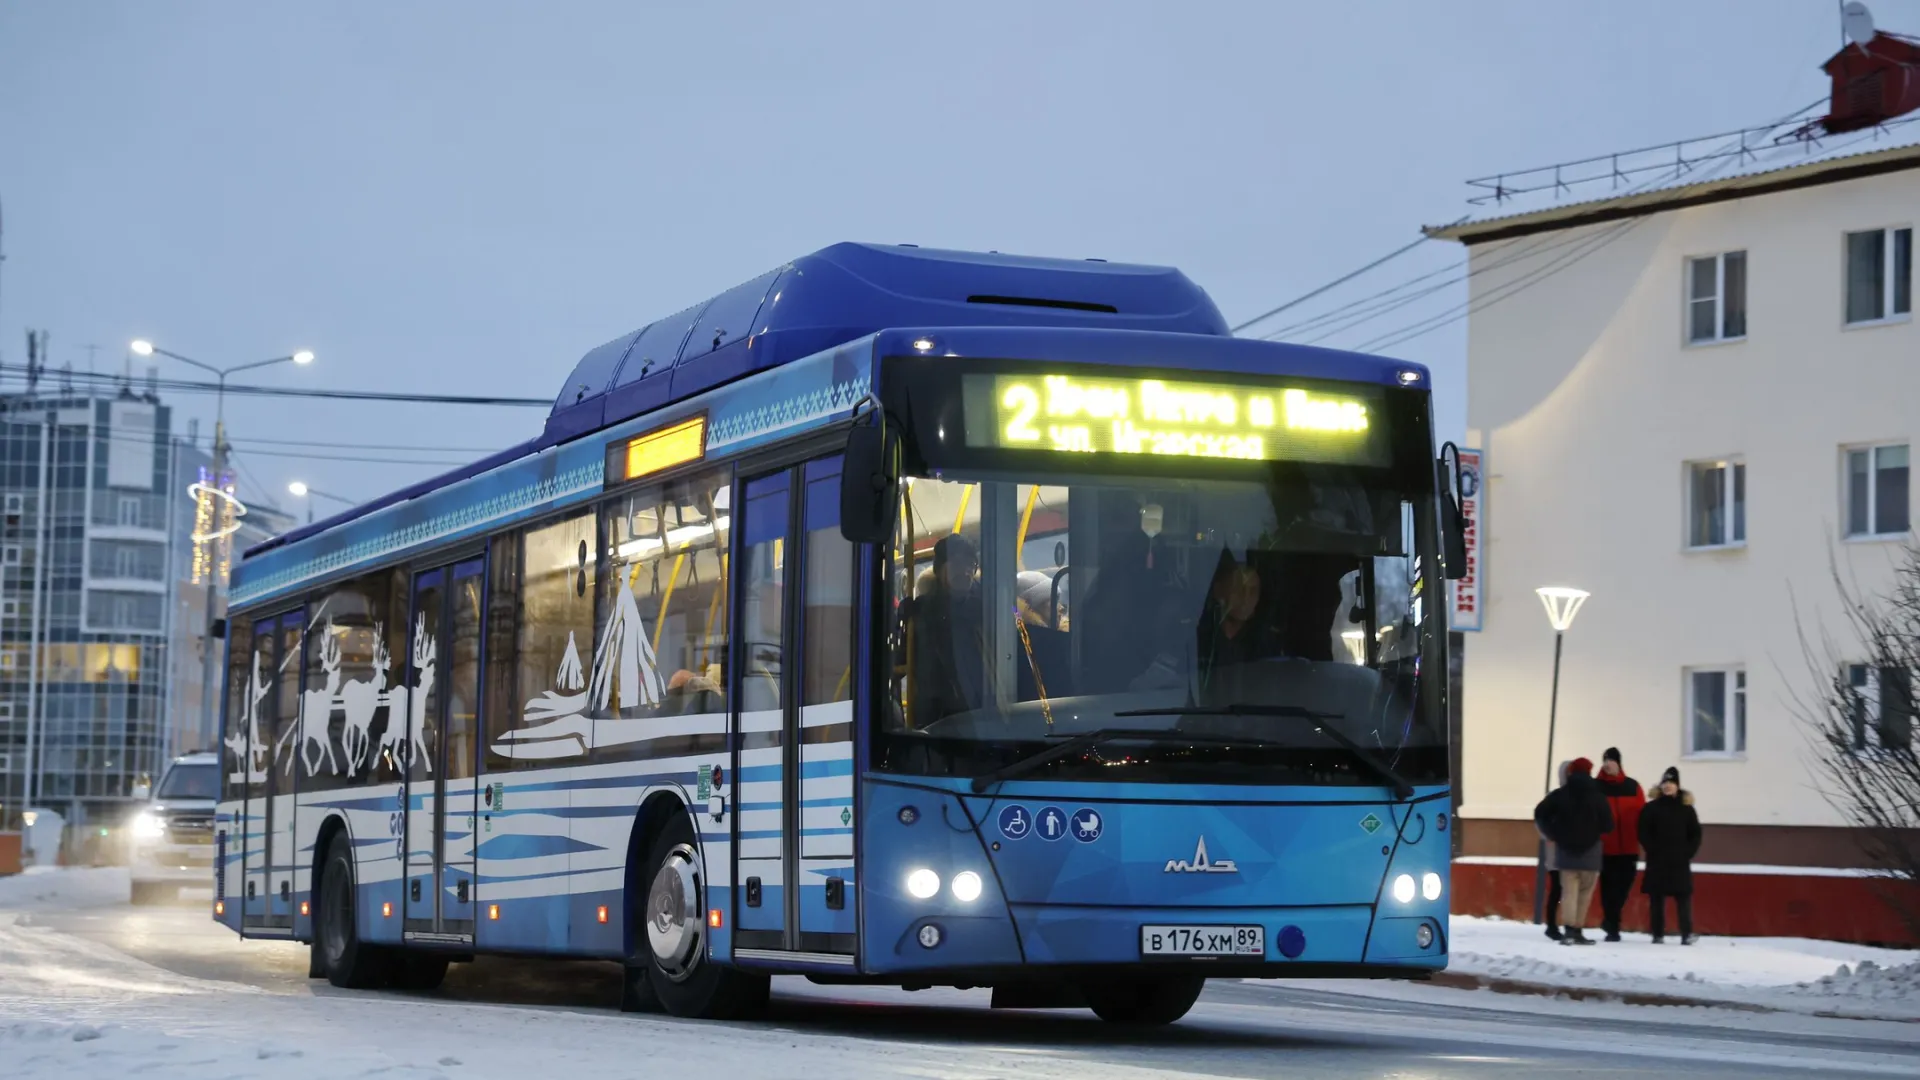 Три бесплатных автобуса будут курсировать по Салехарду два дня. Фото: Андрей Ткачев / «Ямал-Медиа»